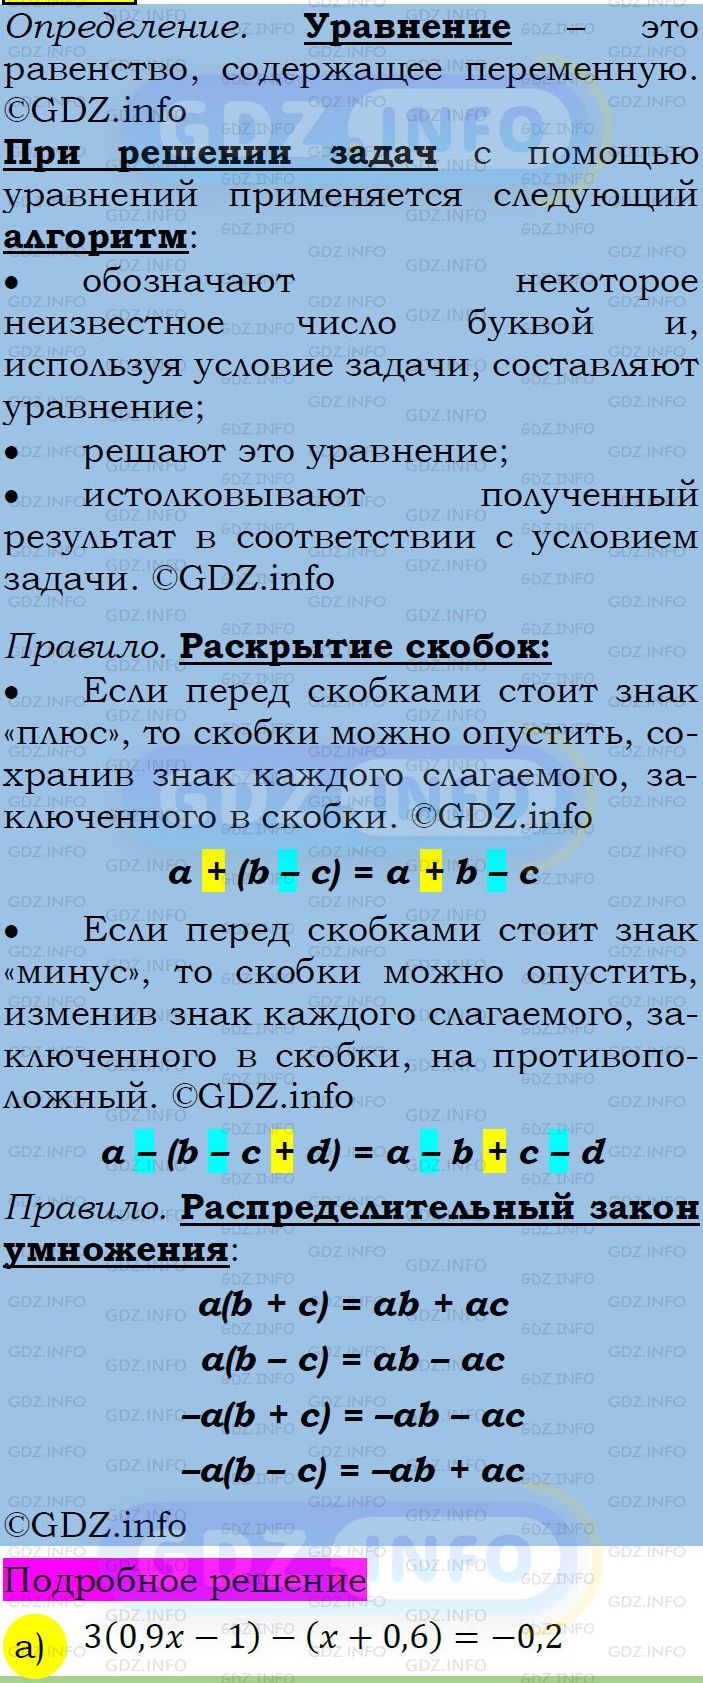 Фото подробного решения: Номер задания №340 из ГДЗ по Алгебре 7 класс: Макарычев Ю.Н.